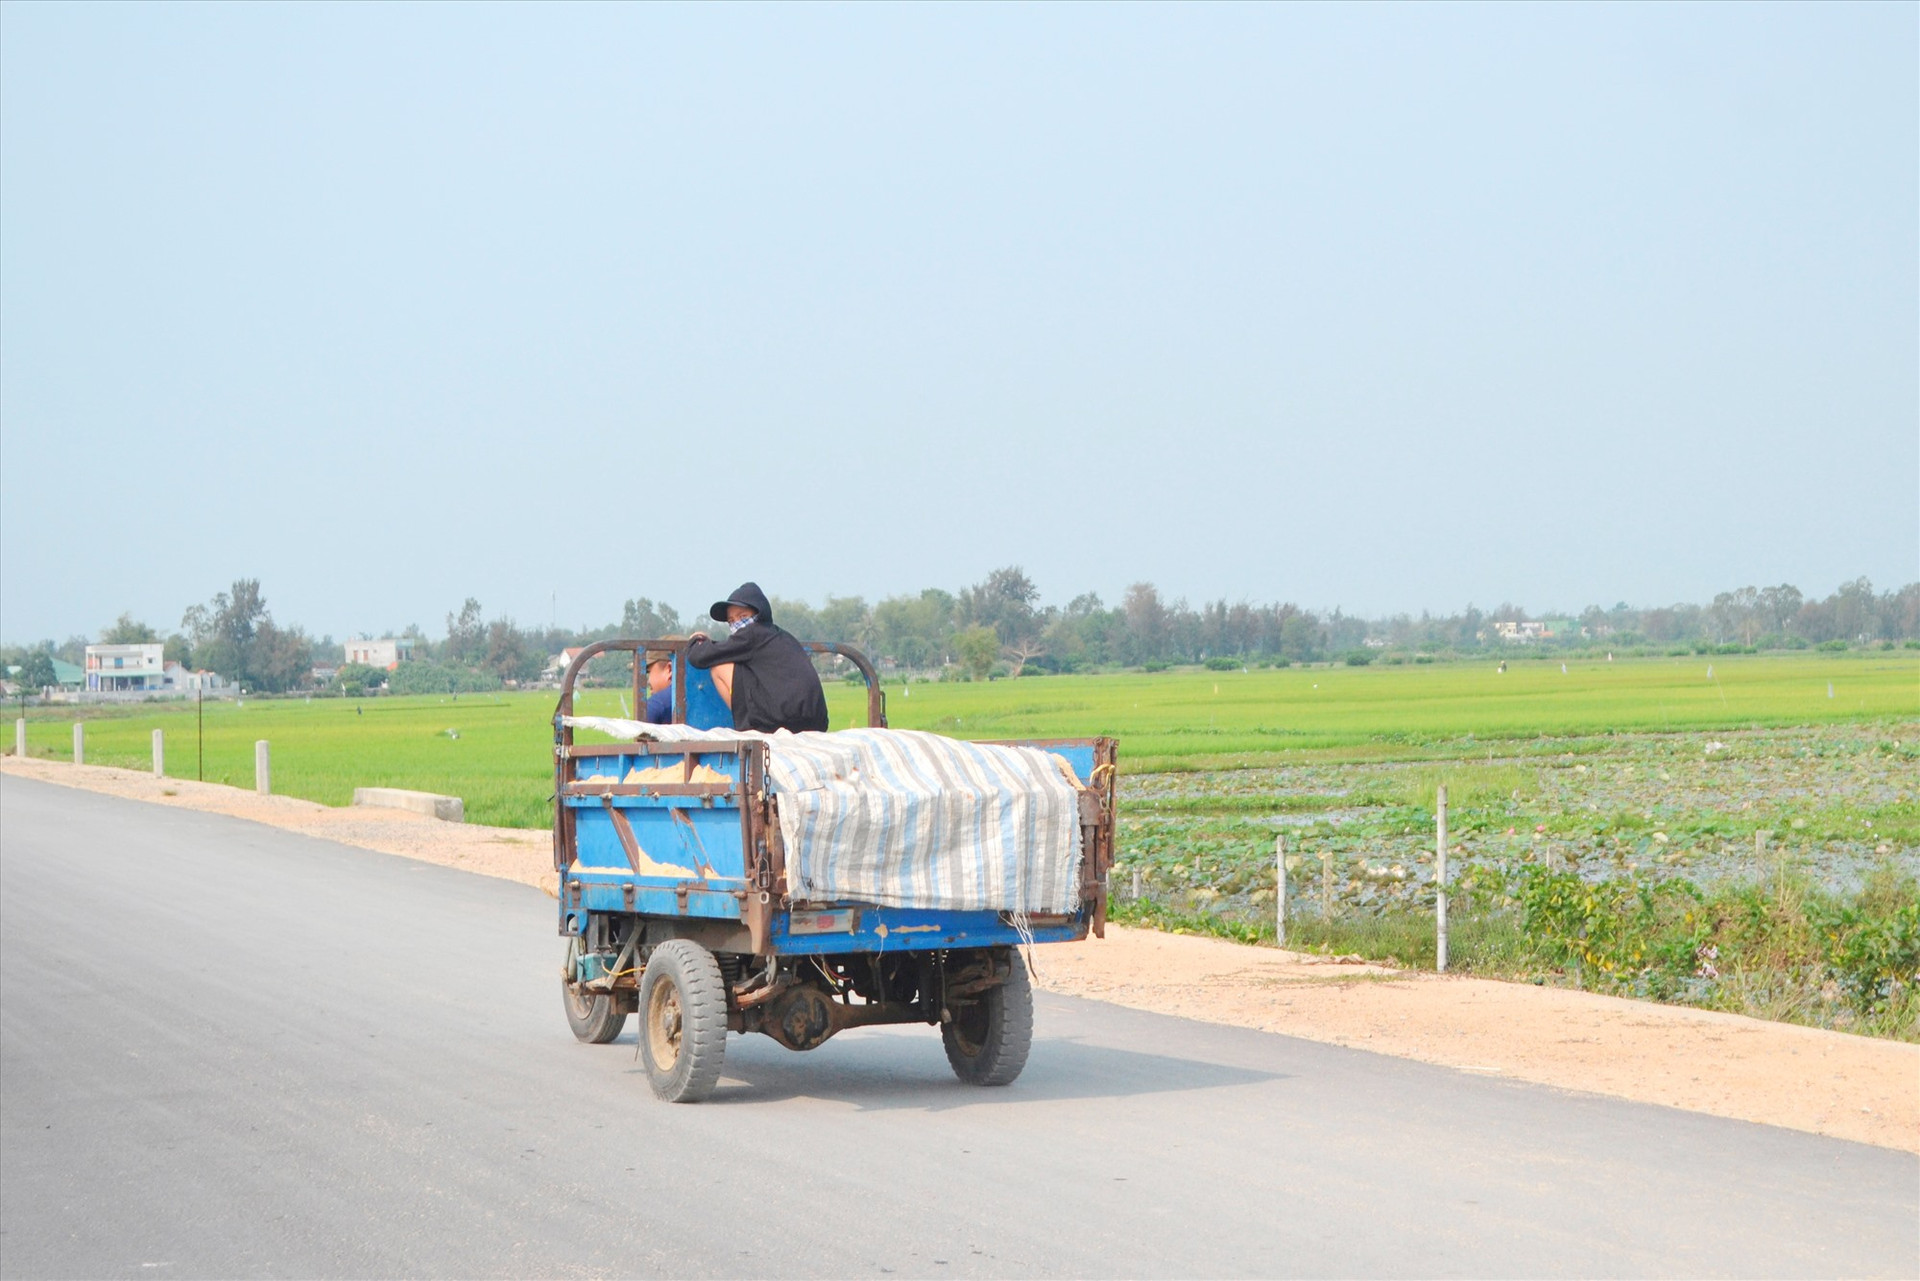 Xe 3 bánh (xe lôi) dùng chở hàng, nhưng kèm chở người trên một tuyến đường tại xã Bình Đào (Thăng Bình). Ảnh: K.K